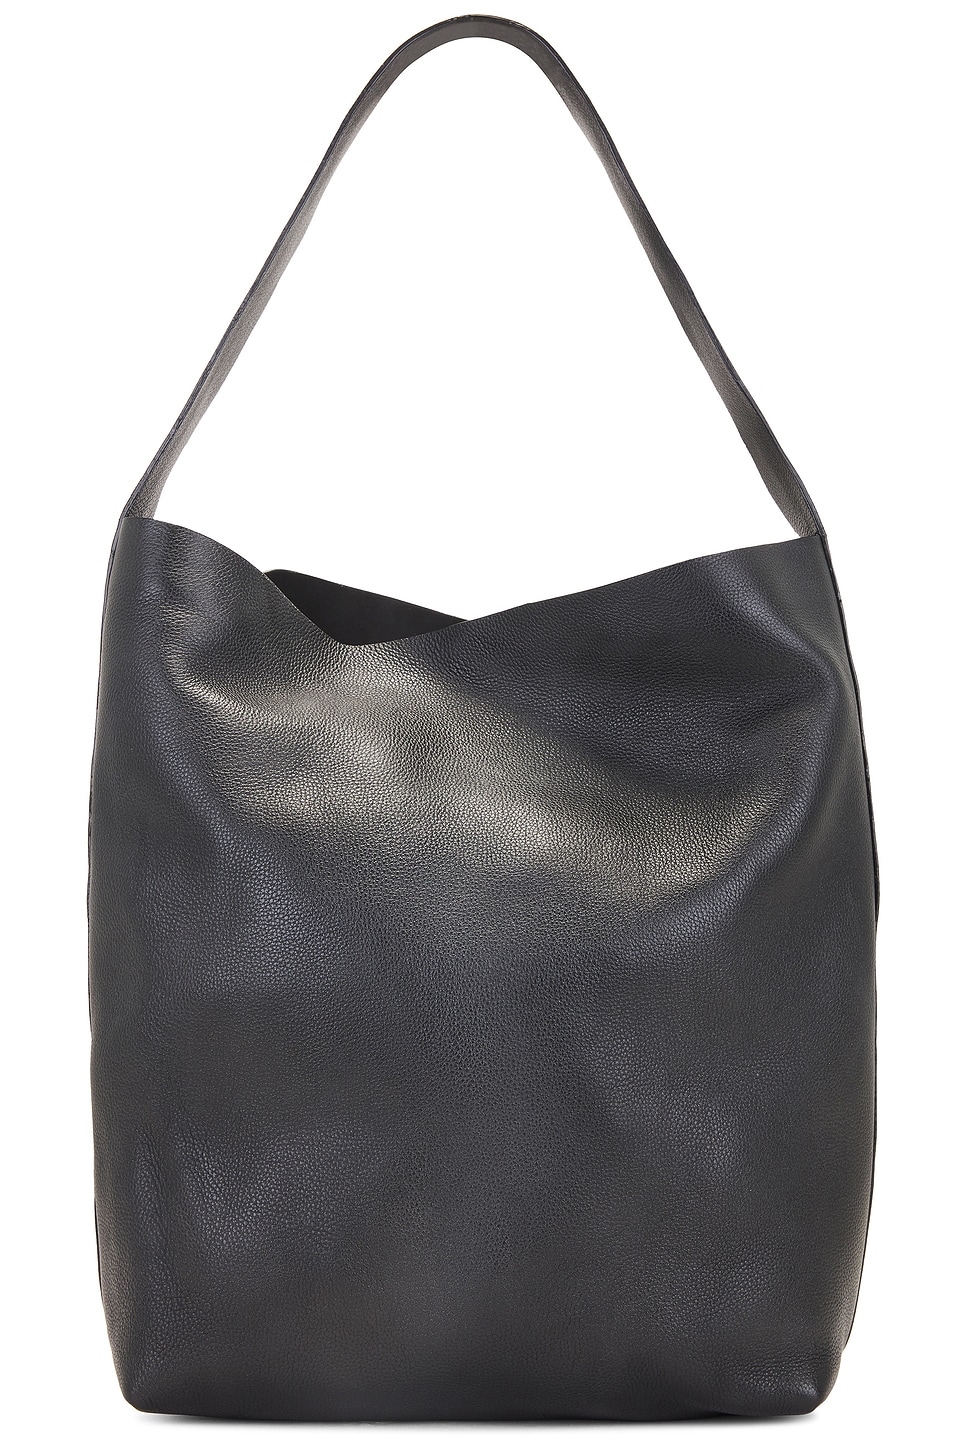 Minimal Everyday Bag in Black